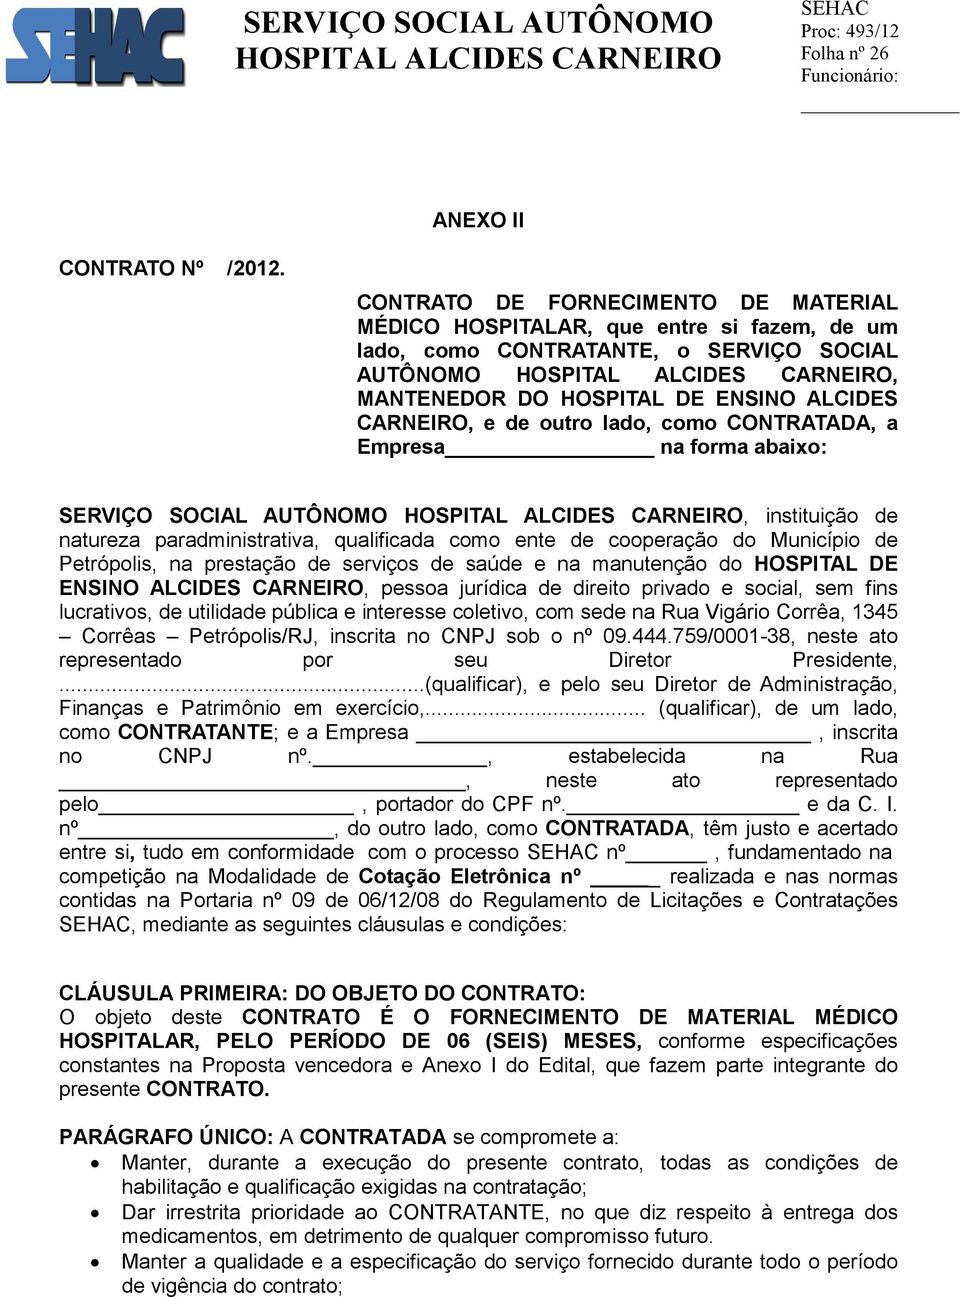 lado, como CONTRATADA, a Empresa na forma abaixo: SERVIÇO SOCIAL AUTÔNOMO, instituição de natureza paradministrativa, qualificada como ente de cooperação do Município de Petrópolis, na prestação de